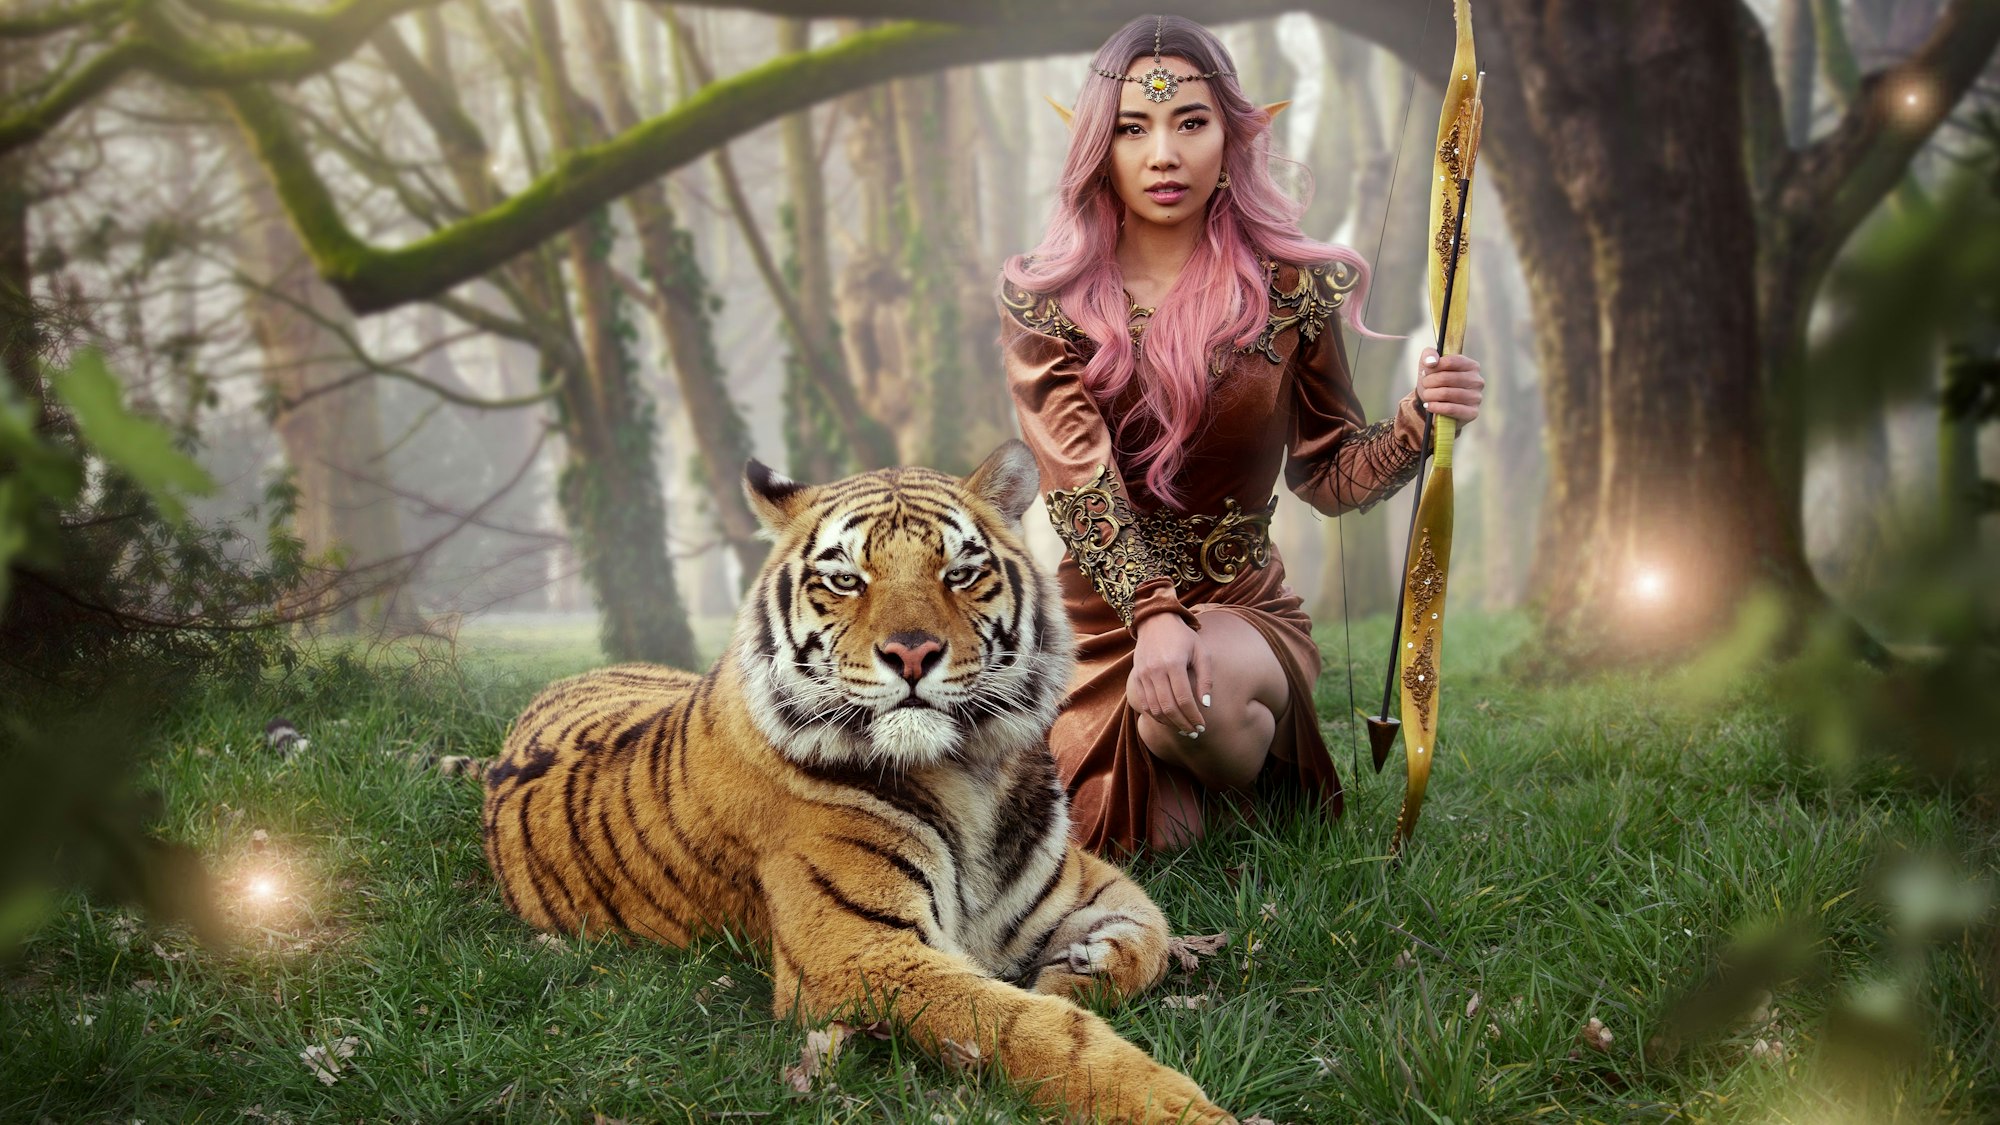 Eine Frau trägt Elfenohren und posiert mit einem ausgewachsenem Tiger.